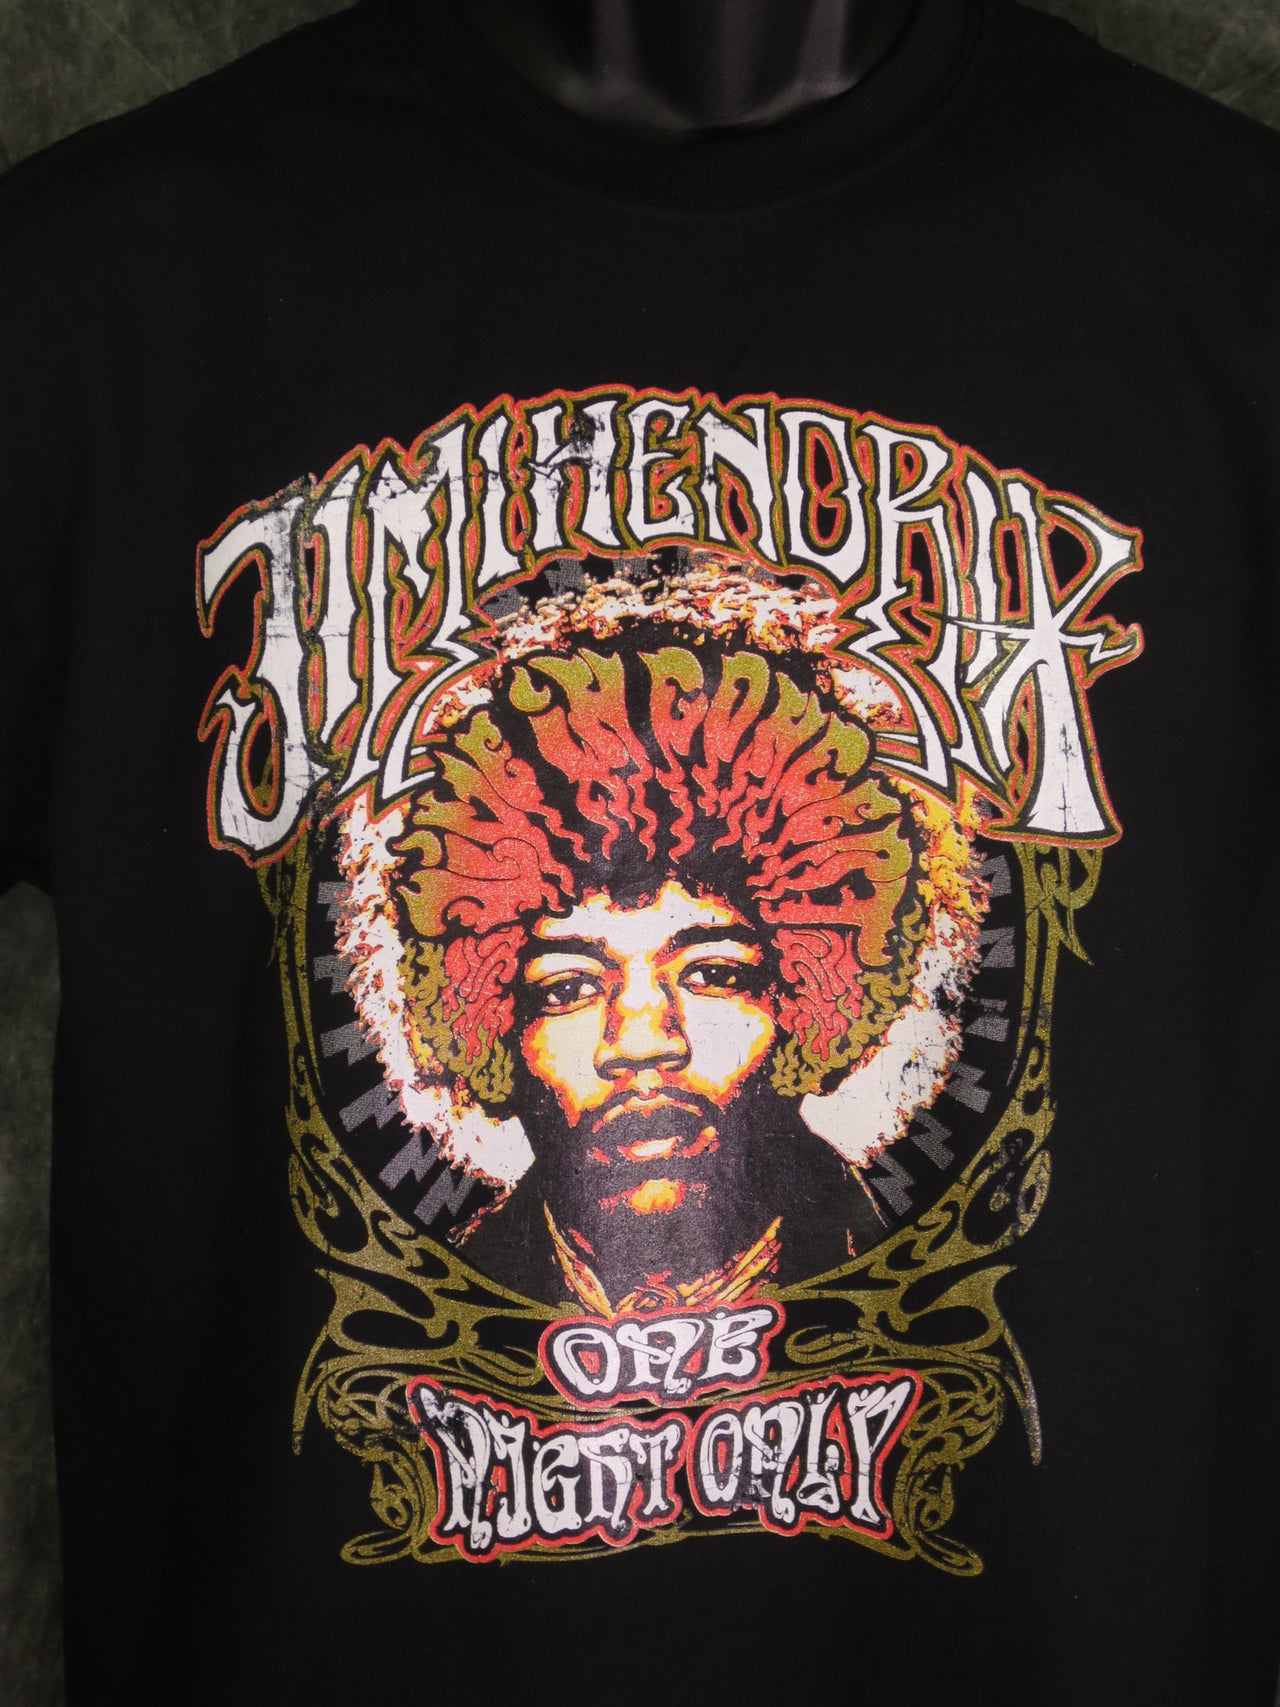 Jimi Hendrix One Night Only tshirt - TshirtNow.net - 1